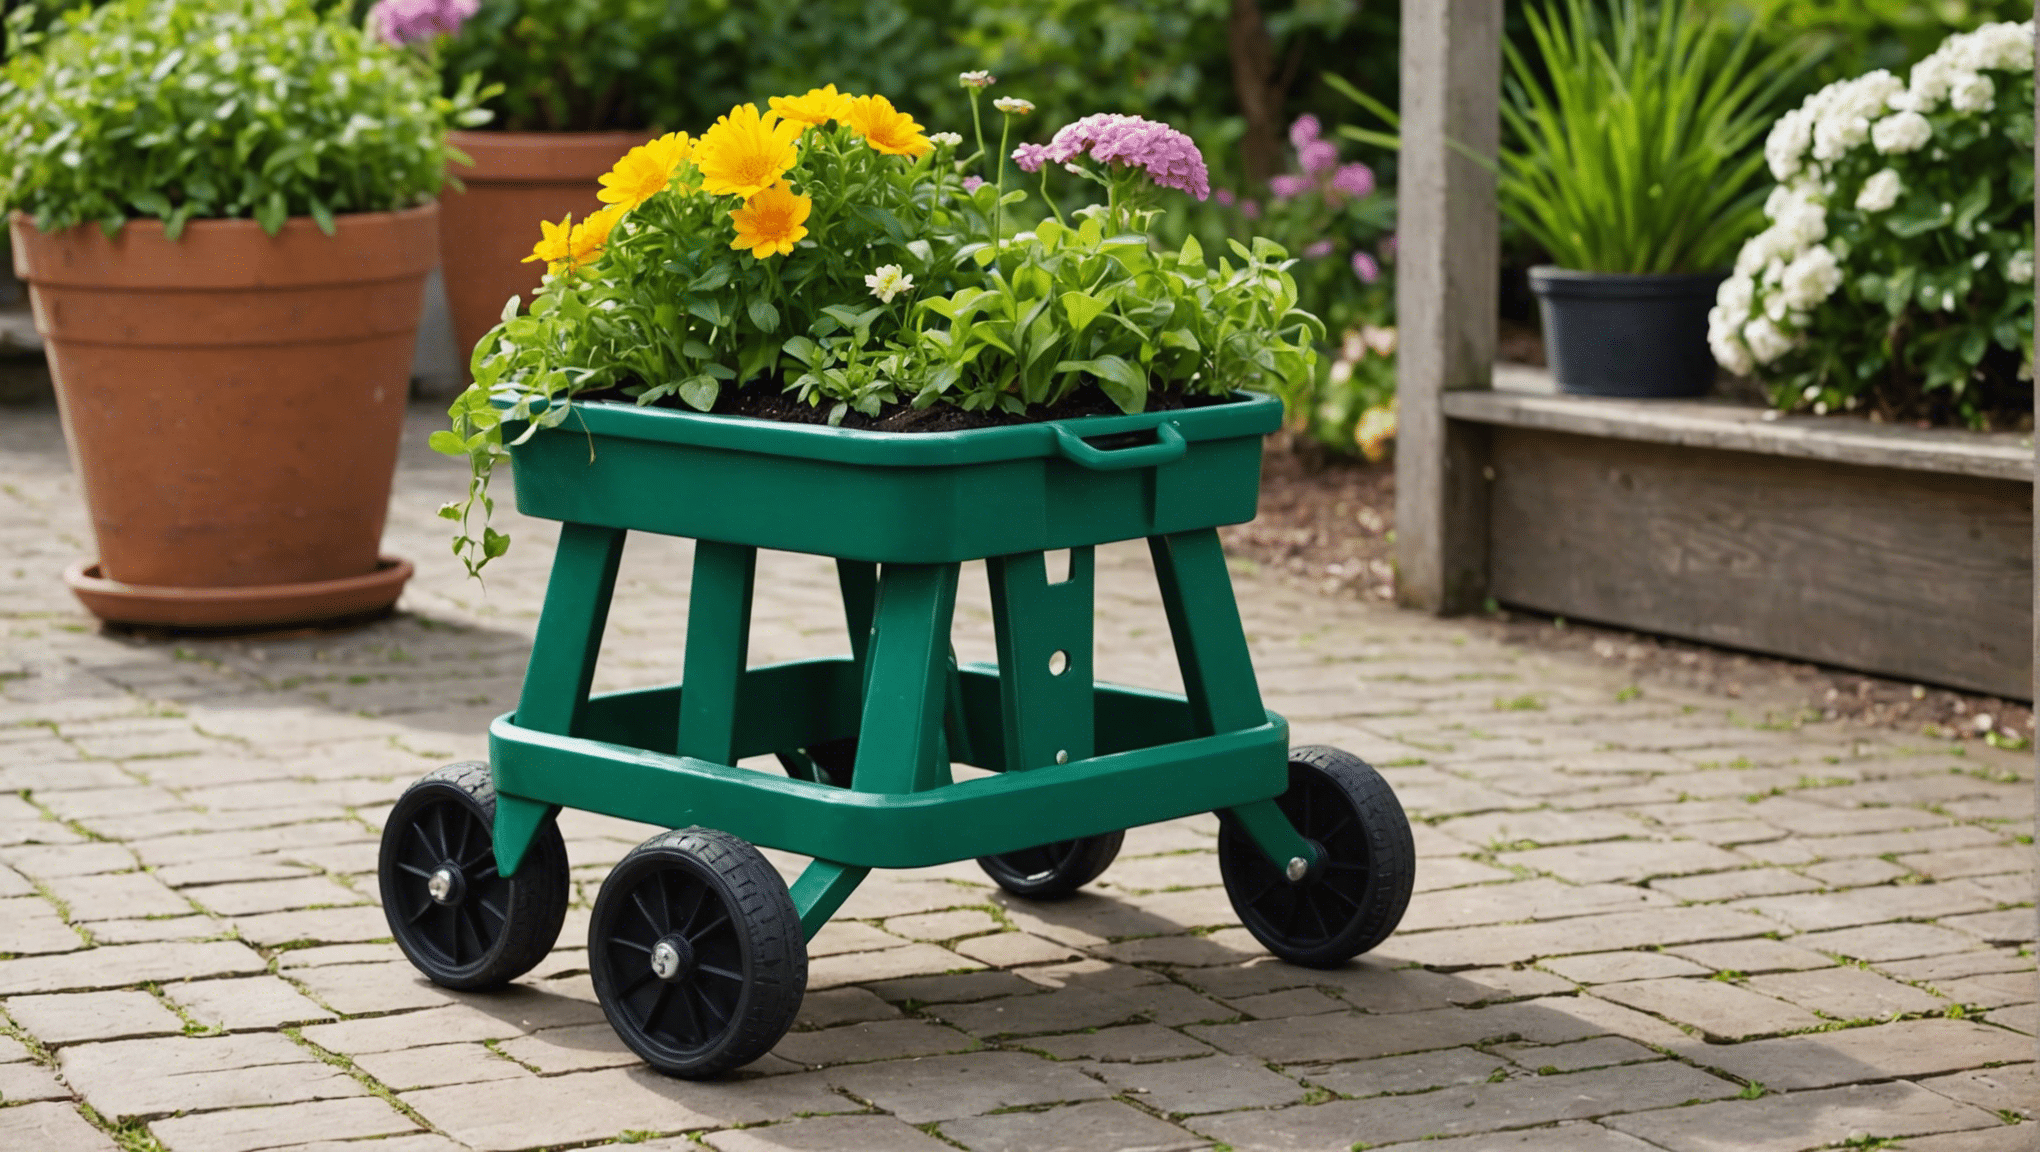 découvrez les avantages des tabourets de jardinage à roulettes et découvrez s'ils constituent un investissement rentable pour vos besoins de jardinage.